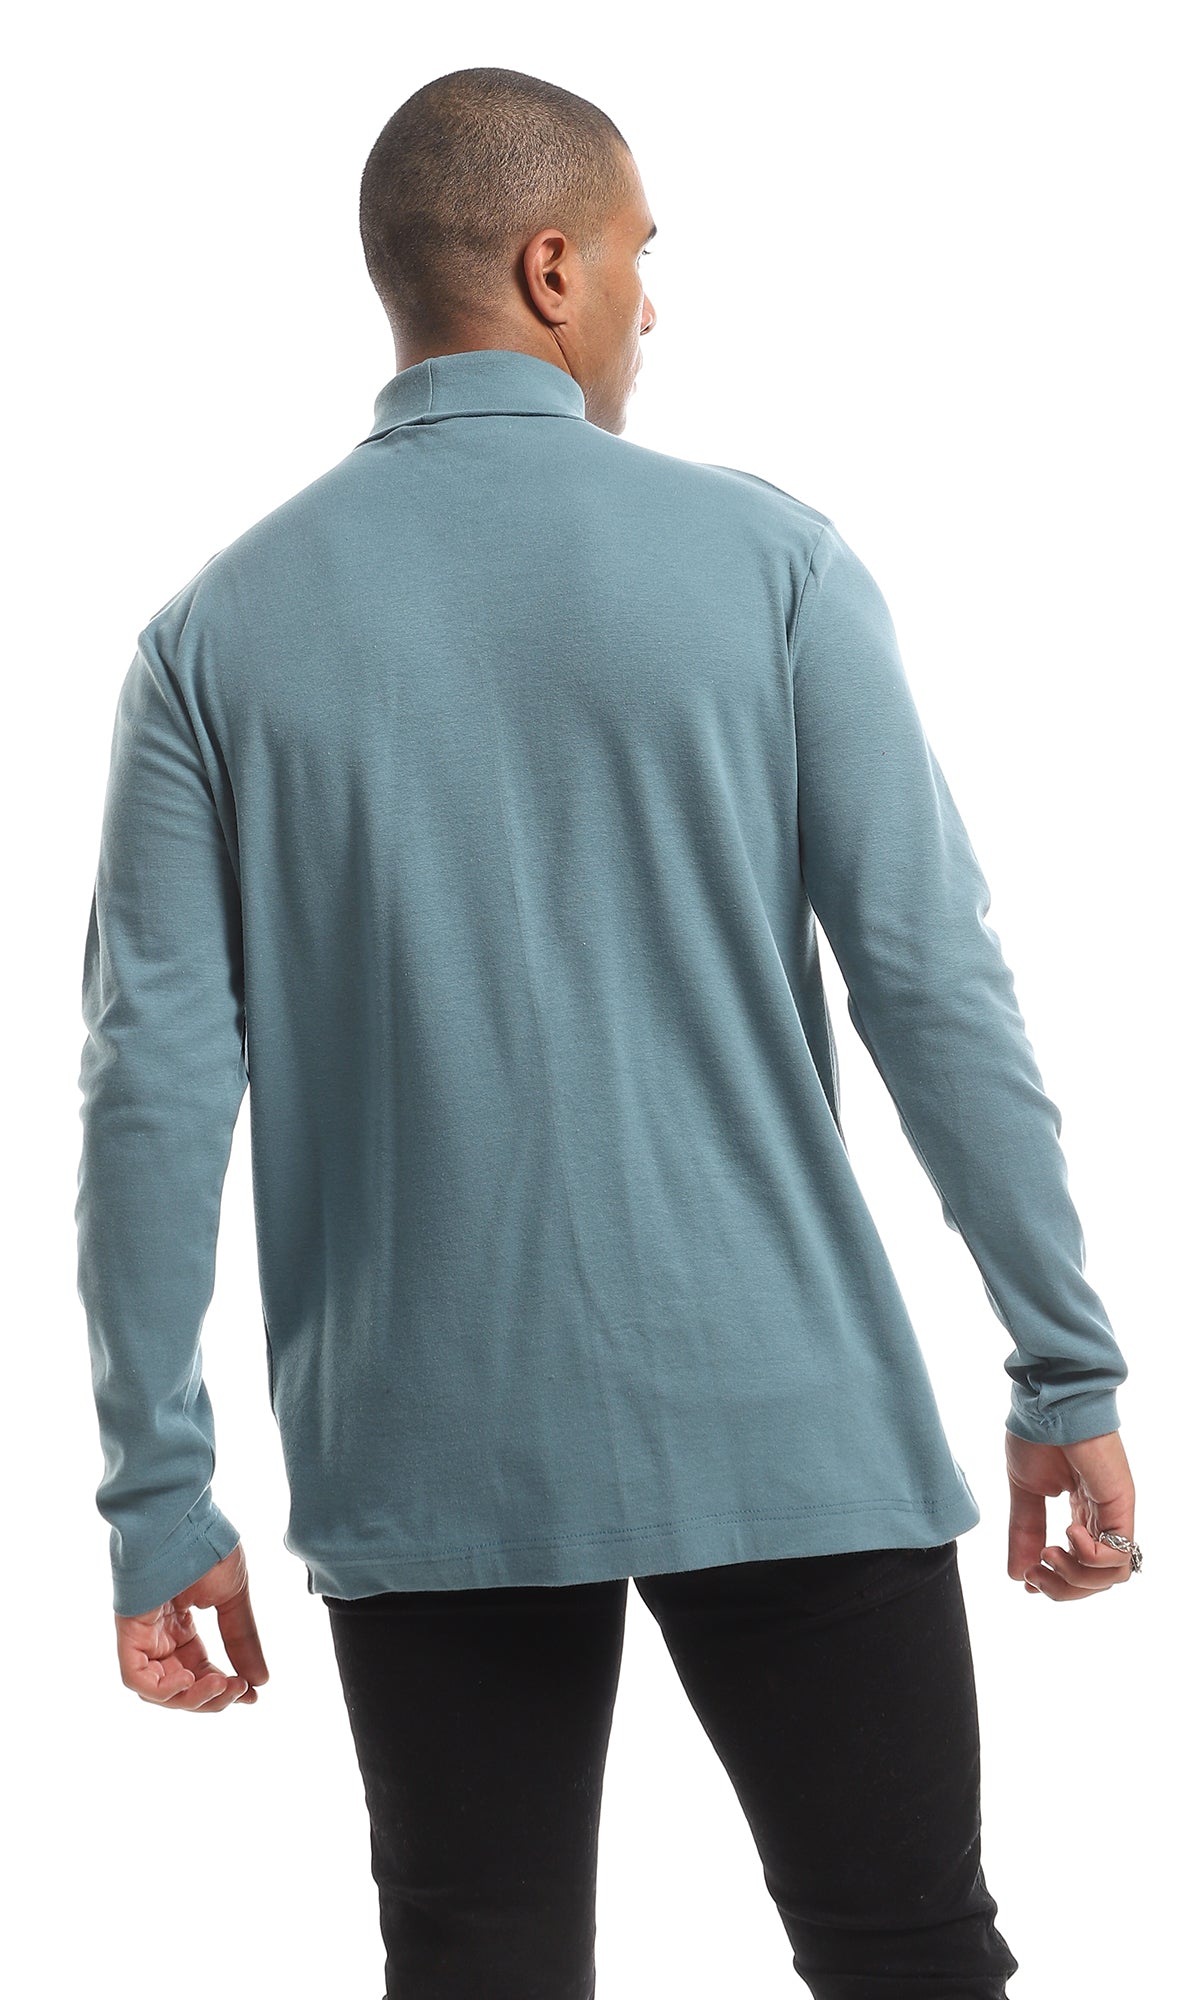 O159797 Basic Turtle Neck Long Sleeved Plain Cotton T-Shirt - Jade